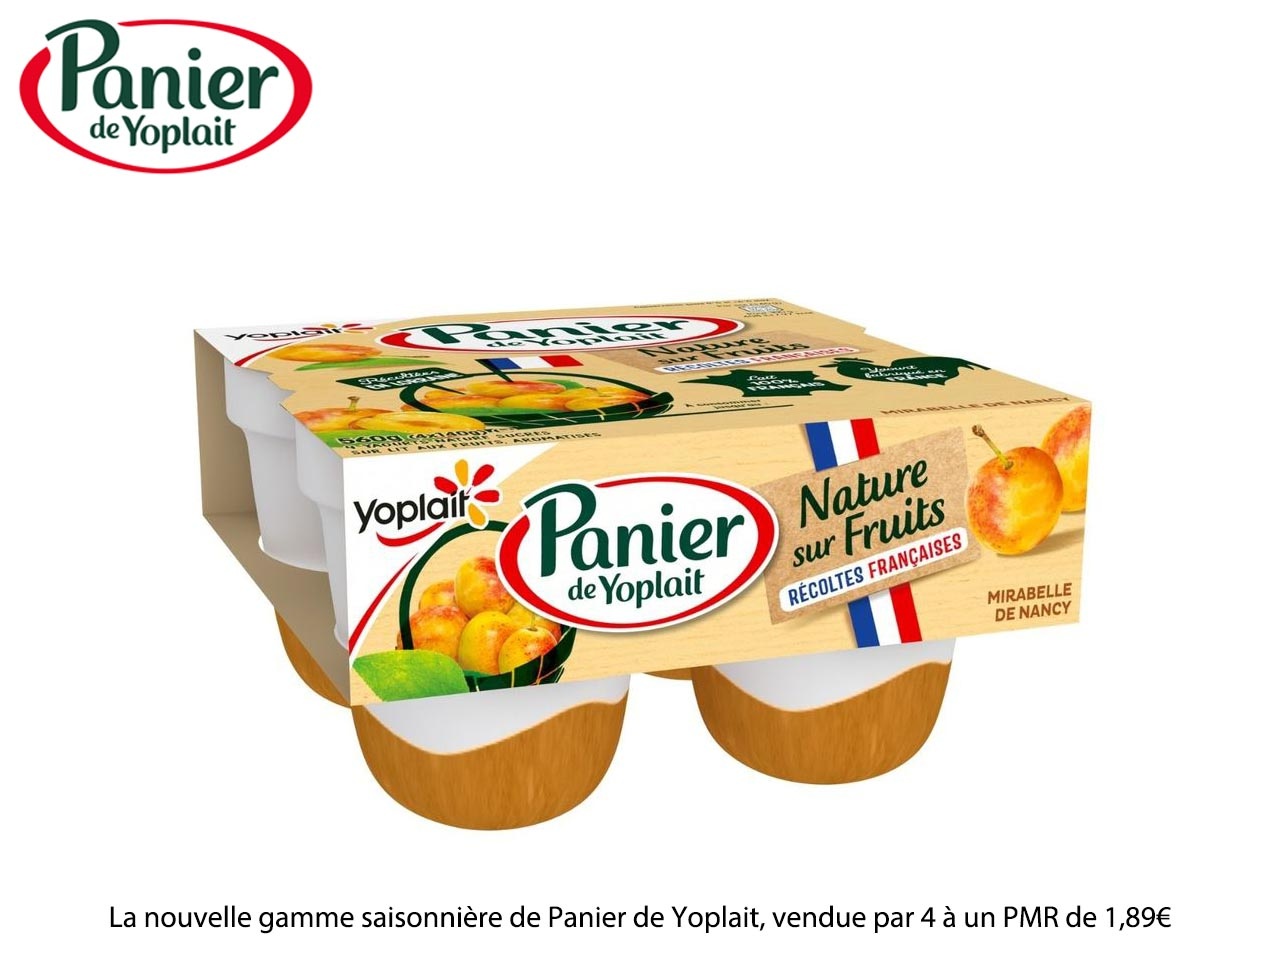 Panier de Yoplait enrichit sa gamme Nature sur Fruits, avec une nouvelle offre « Récoltes Françaises »